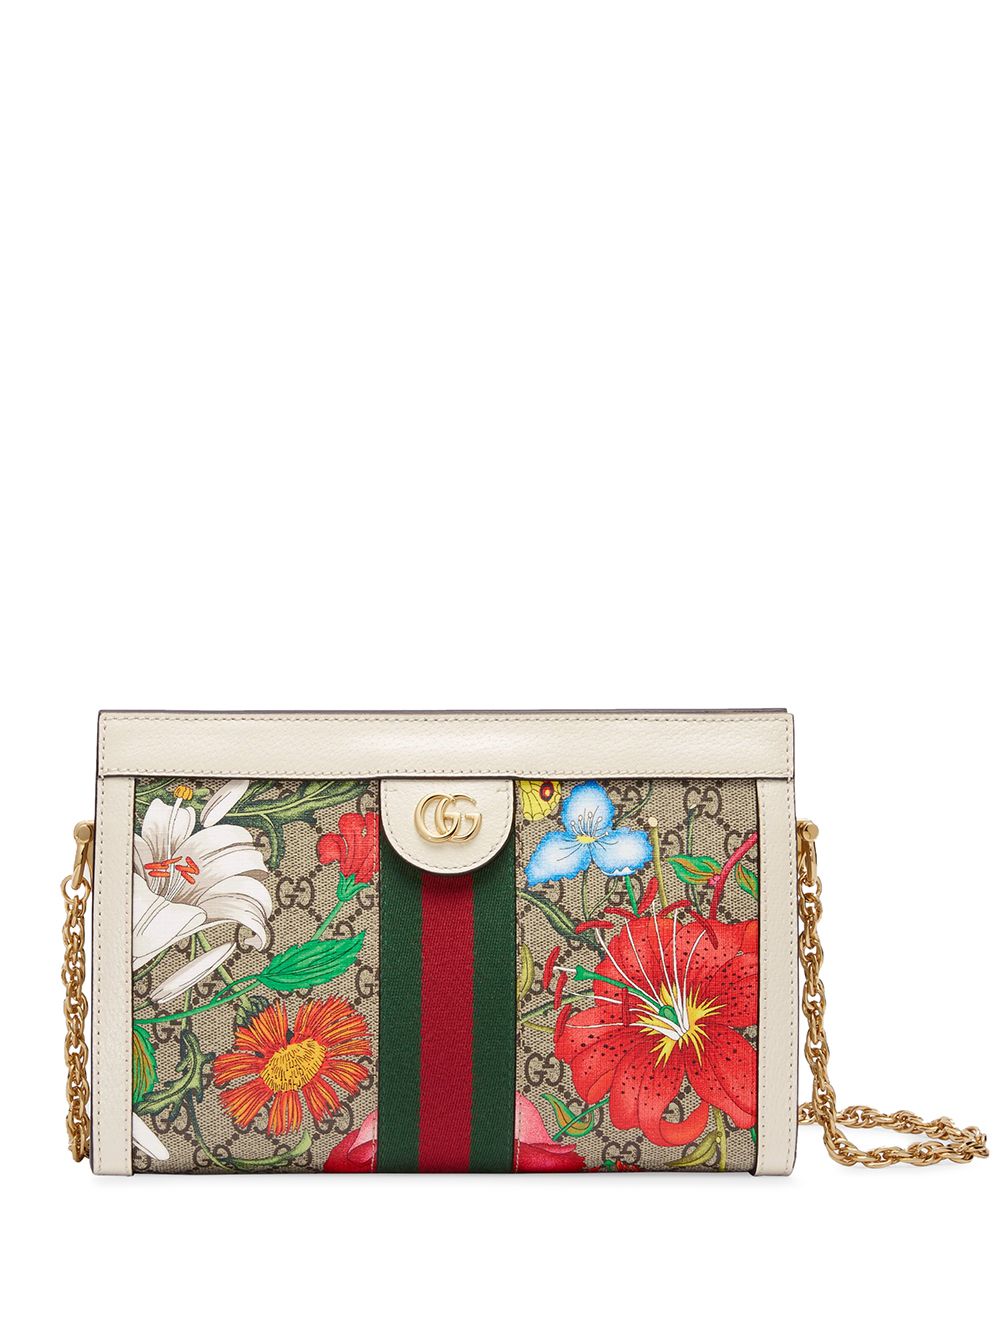 фото Gucci маленькая сумка на плечо ophidia с принтом flora